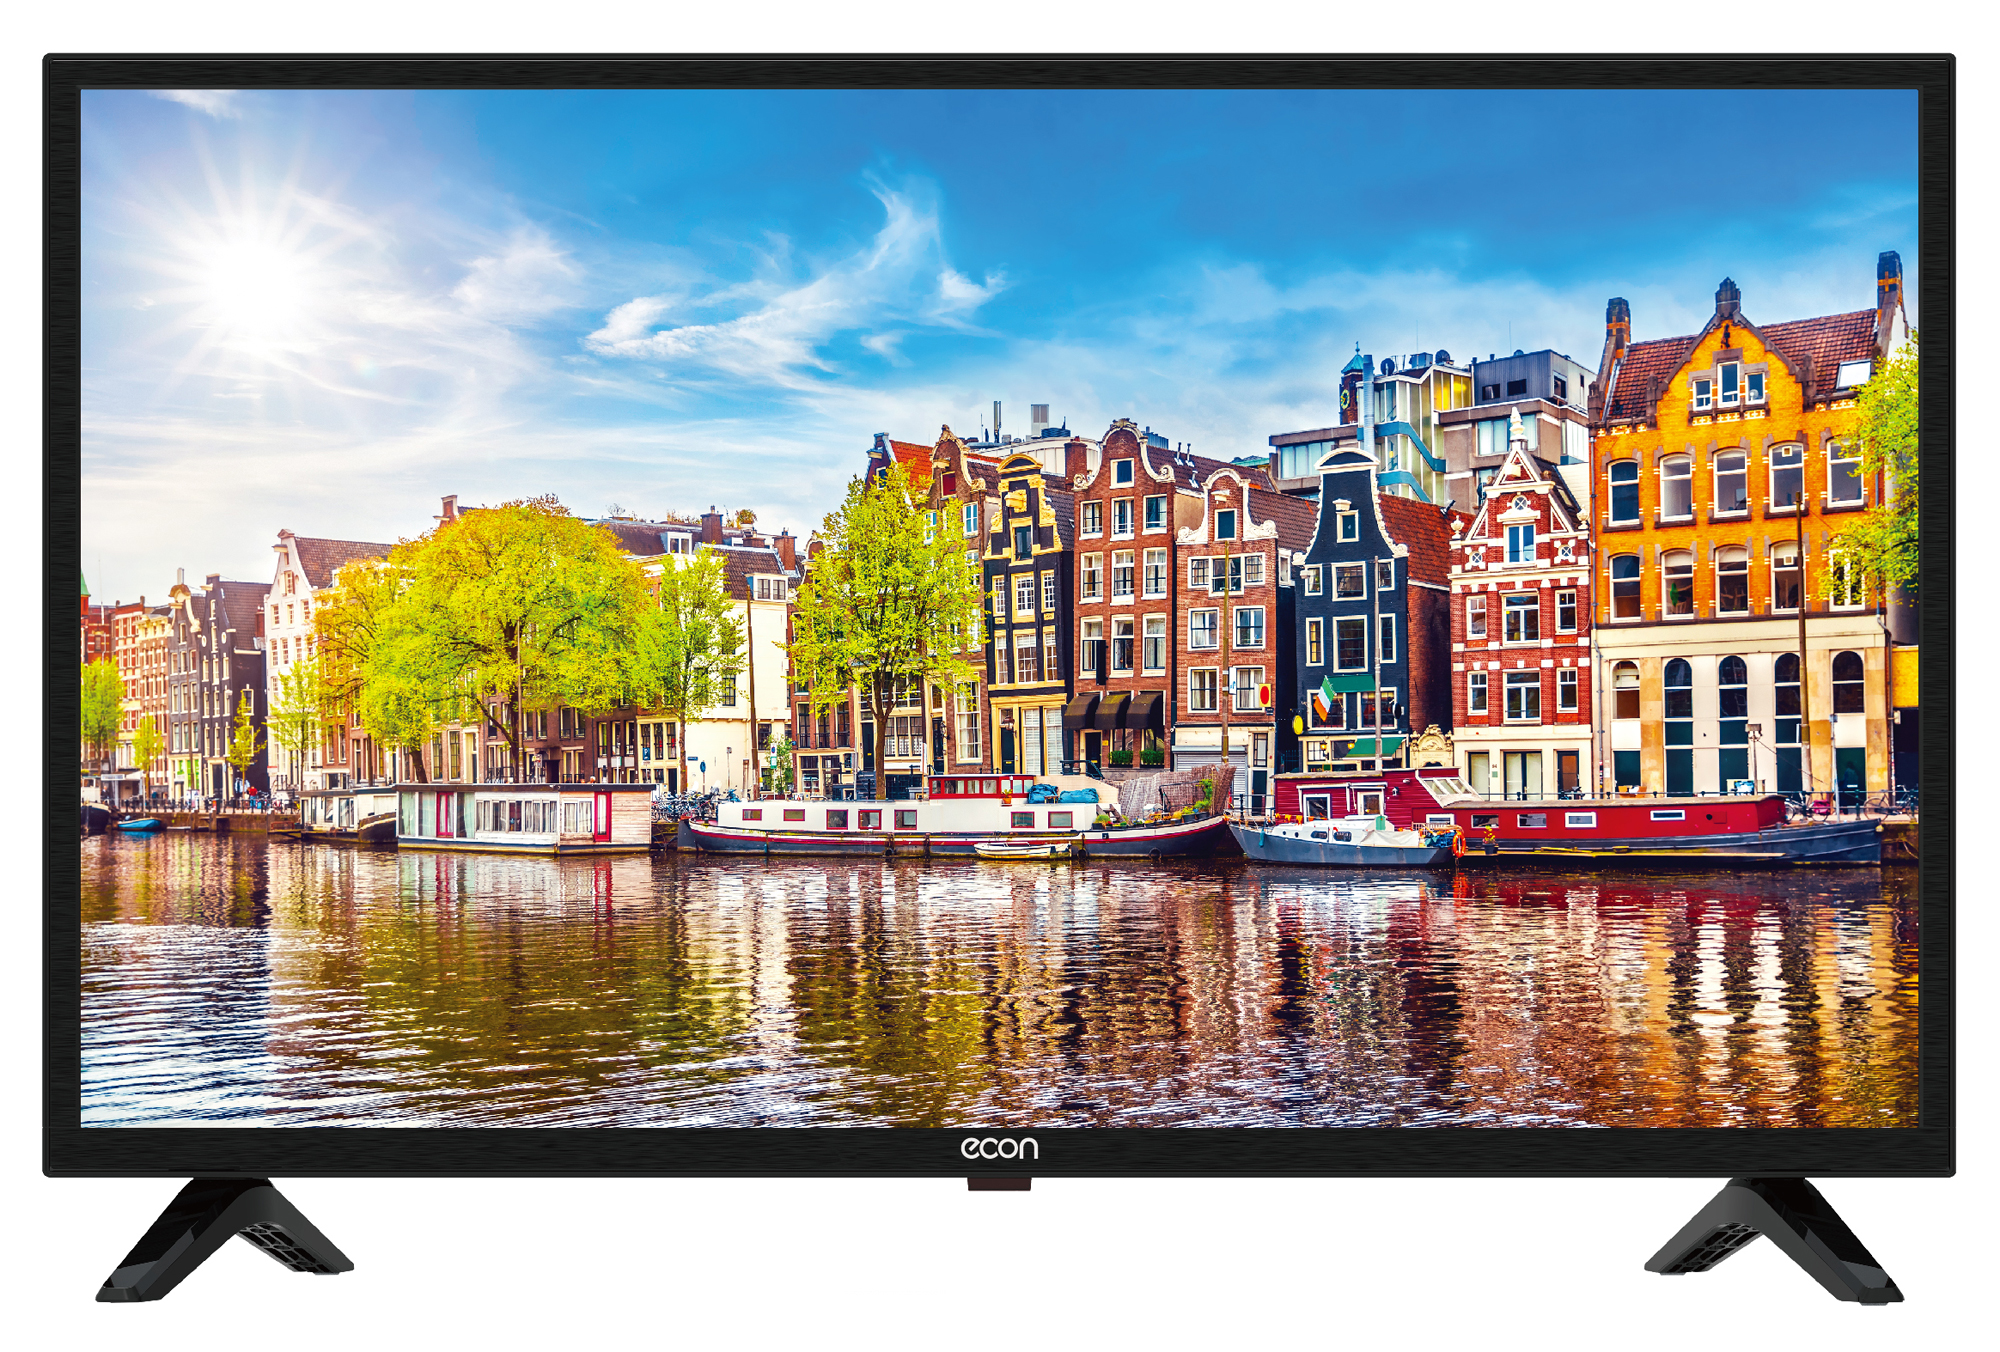 Картинка UHD 4K Яндекс Smart телевизор ECON EX-60US001B по разумной цене купить в интернет магазине mall.su